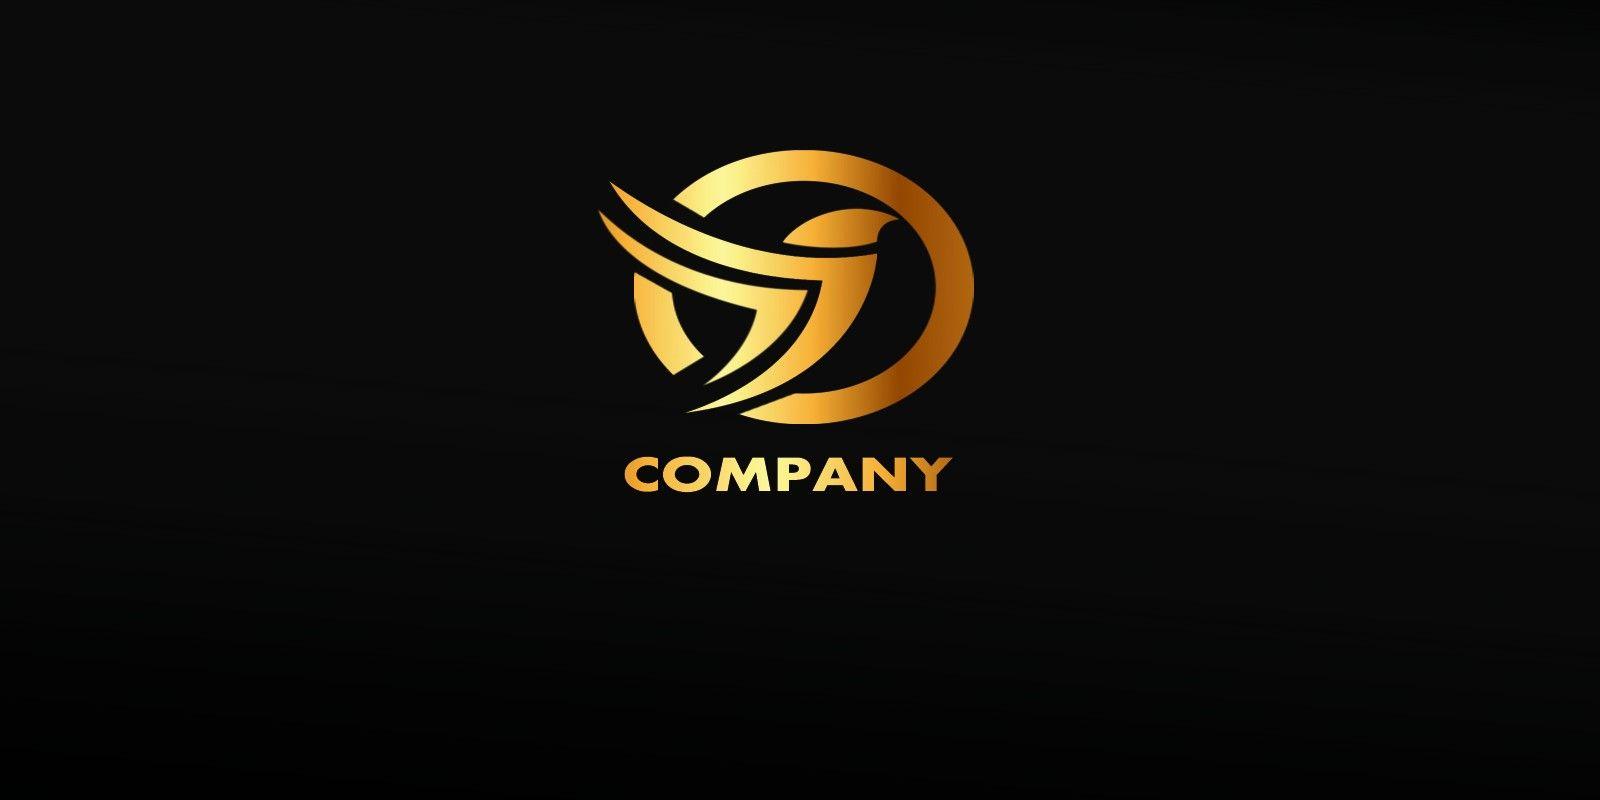 Gold Bird Company Logo - Golden Bird Logo | Codester